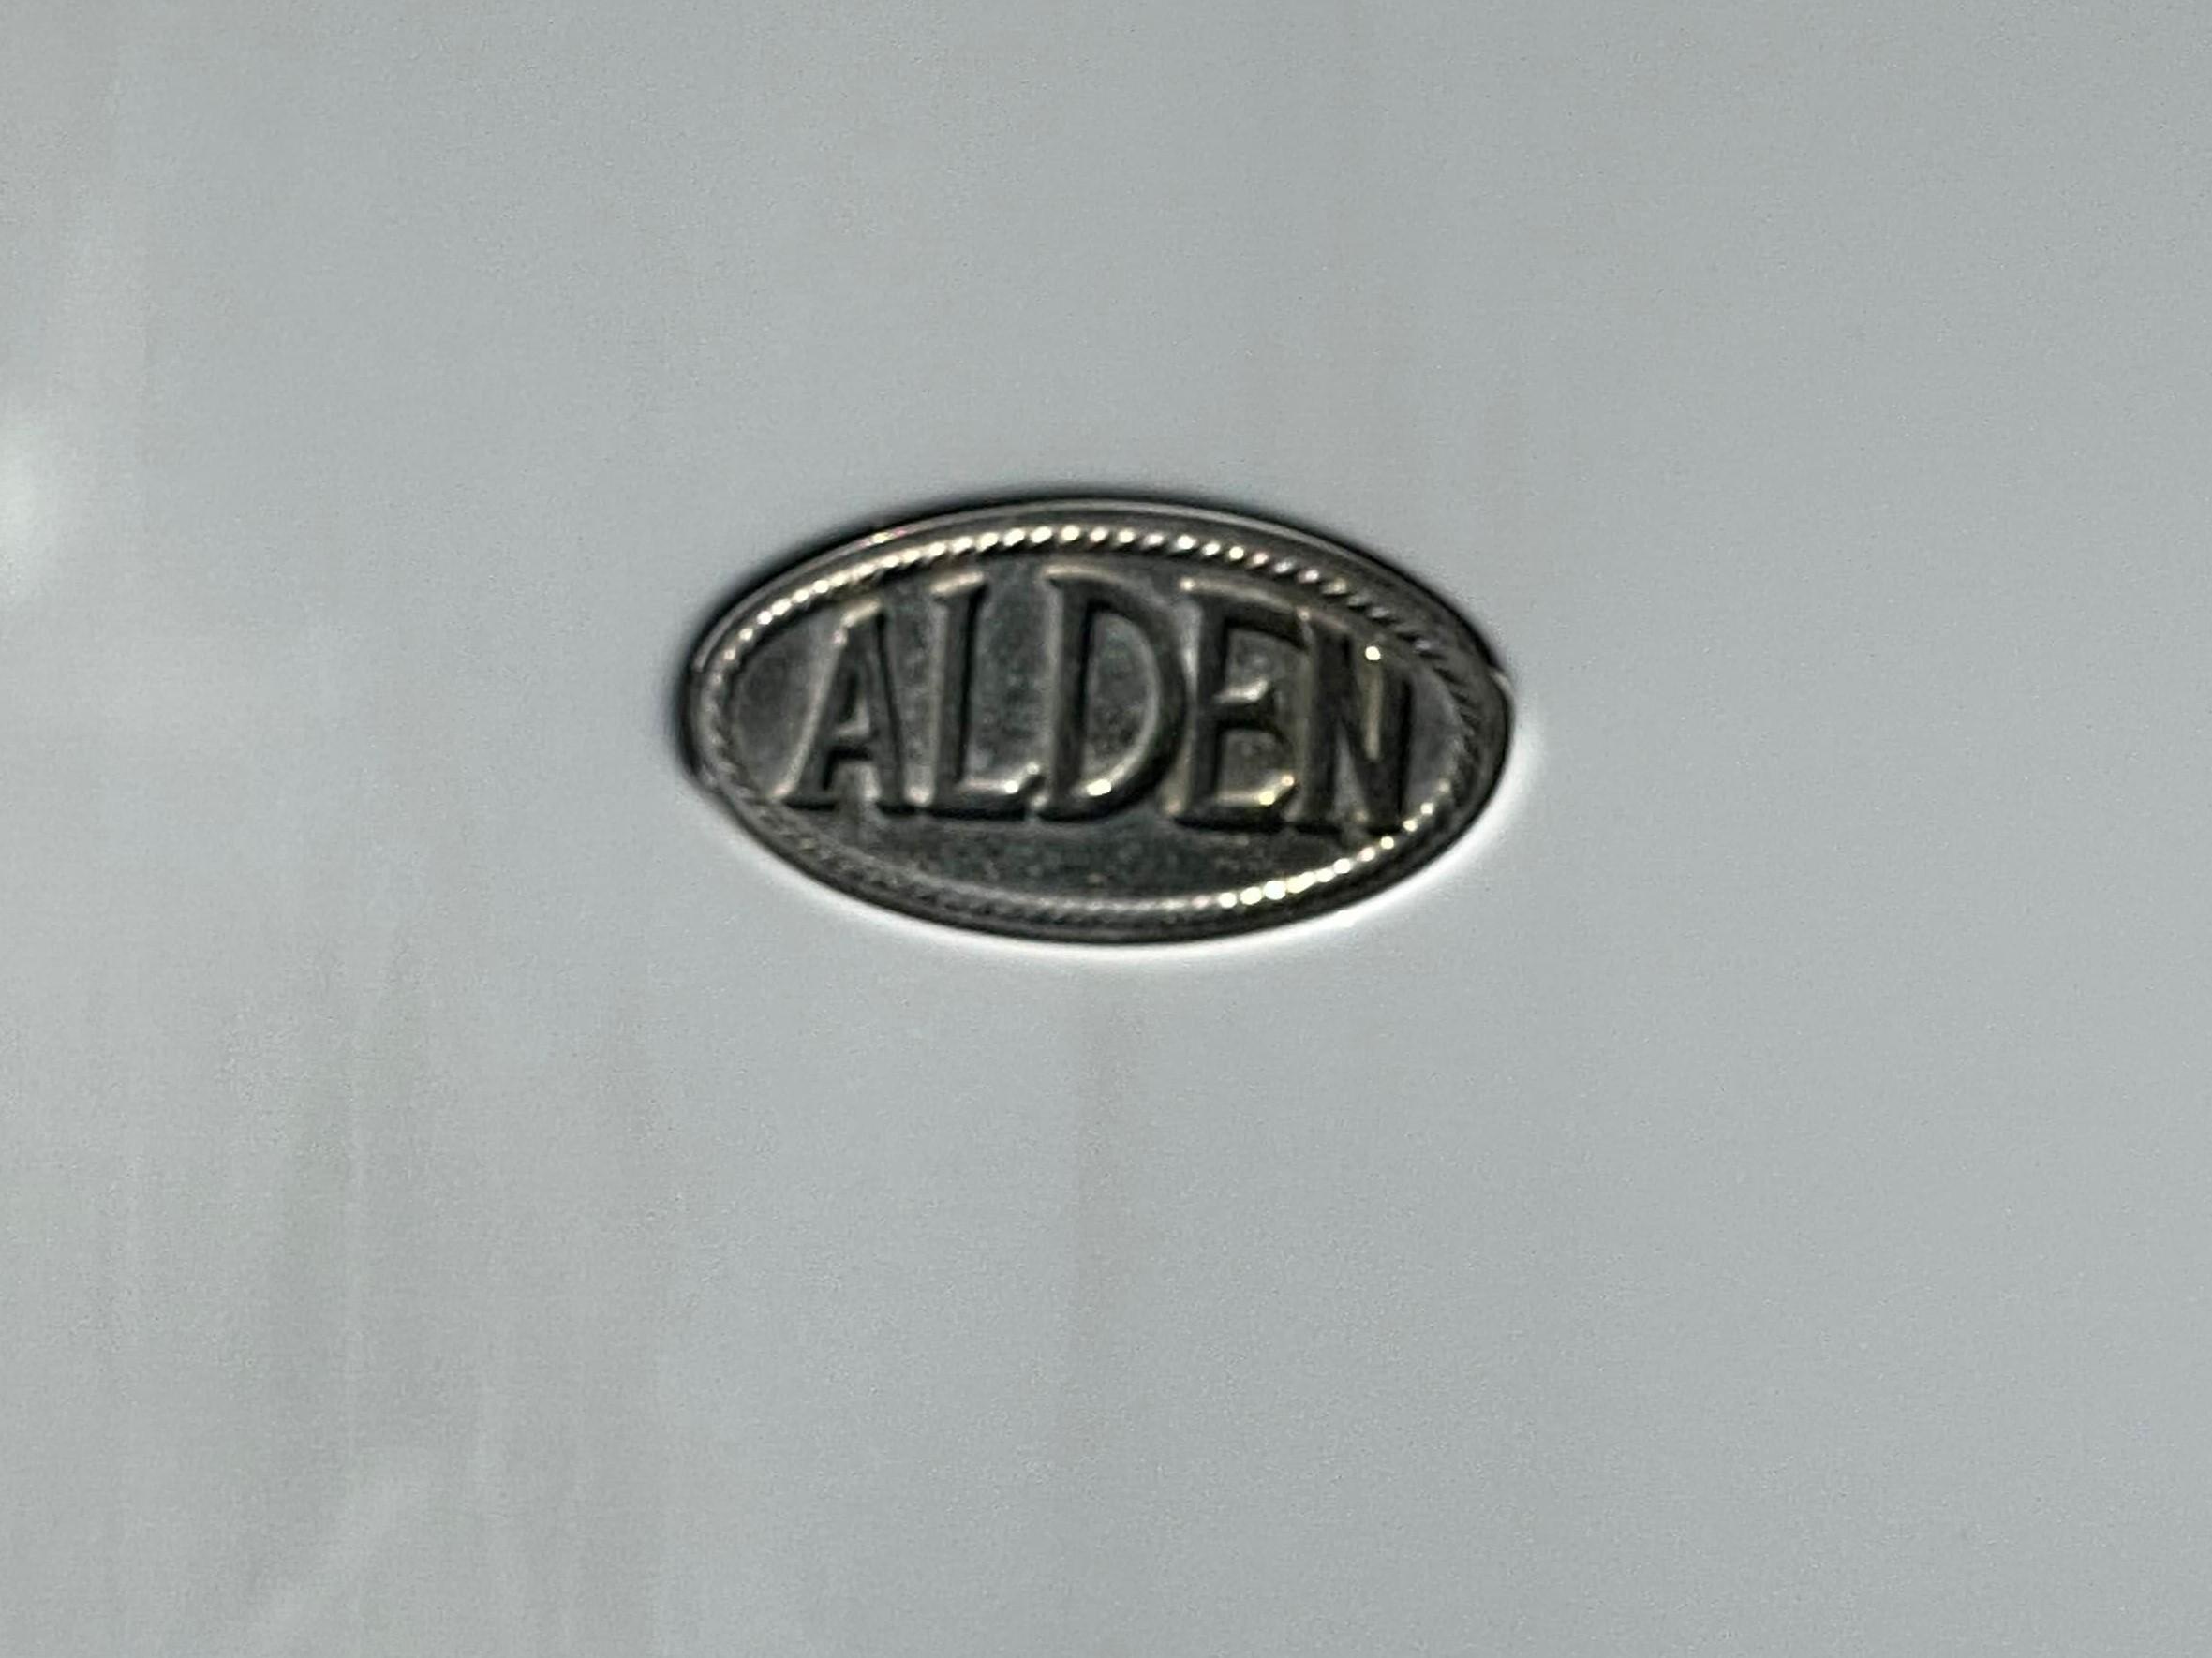 1985 Alden 50